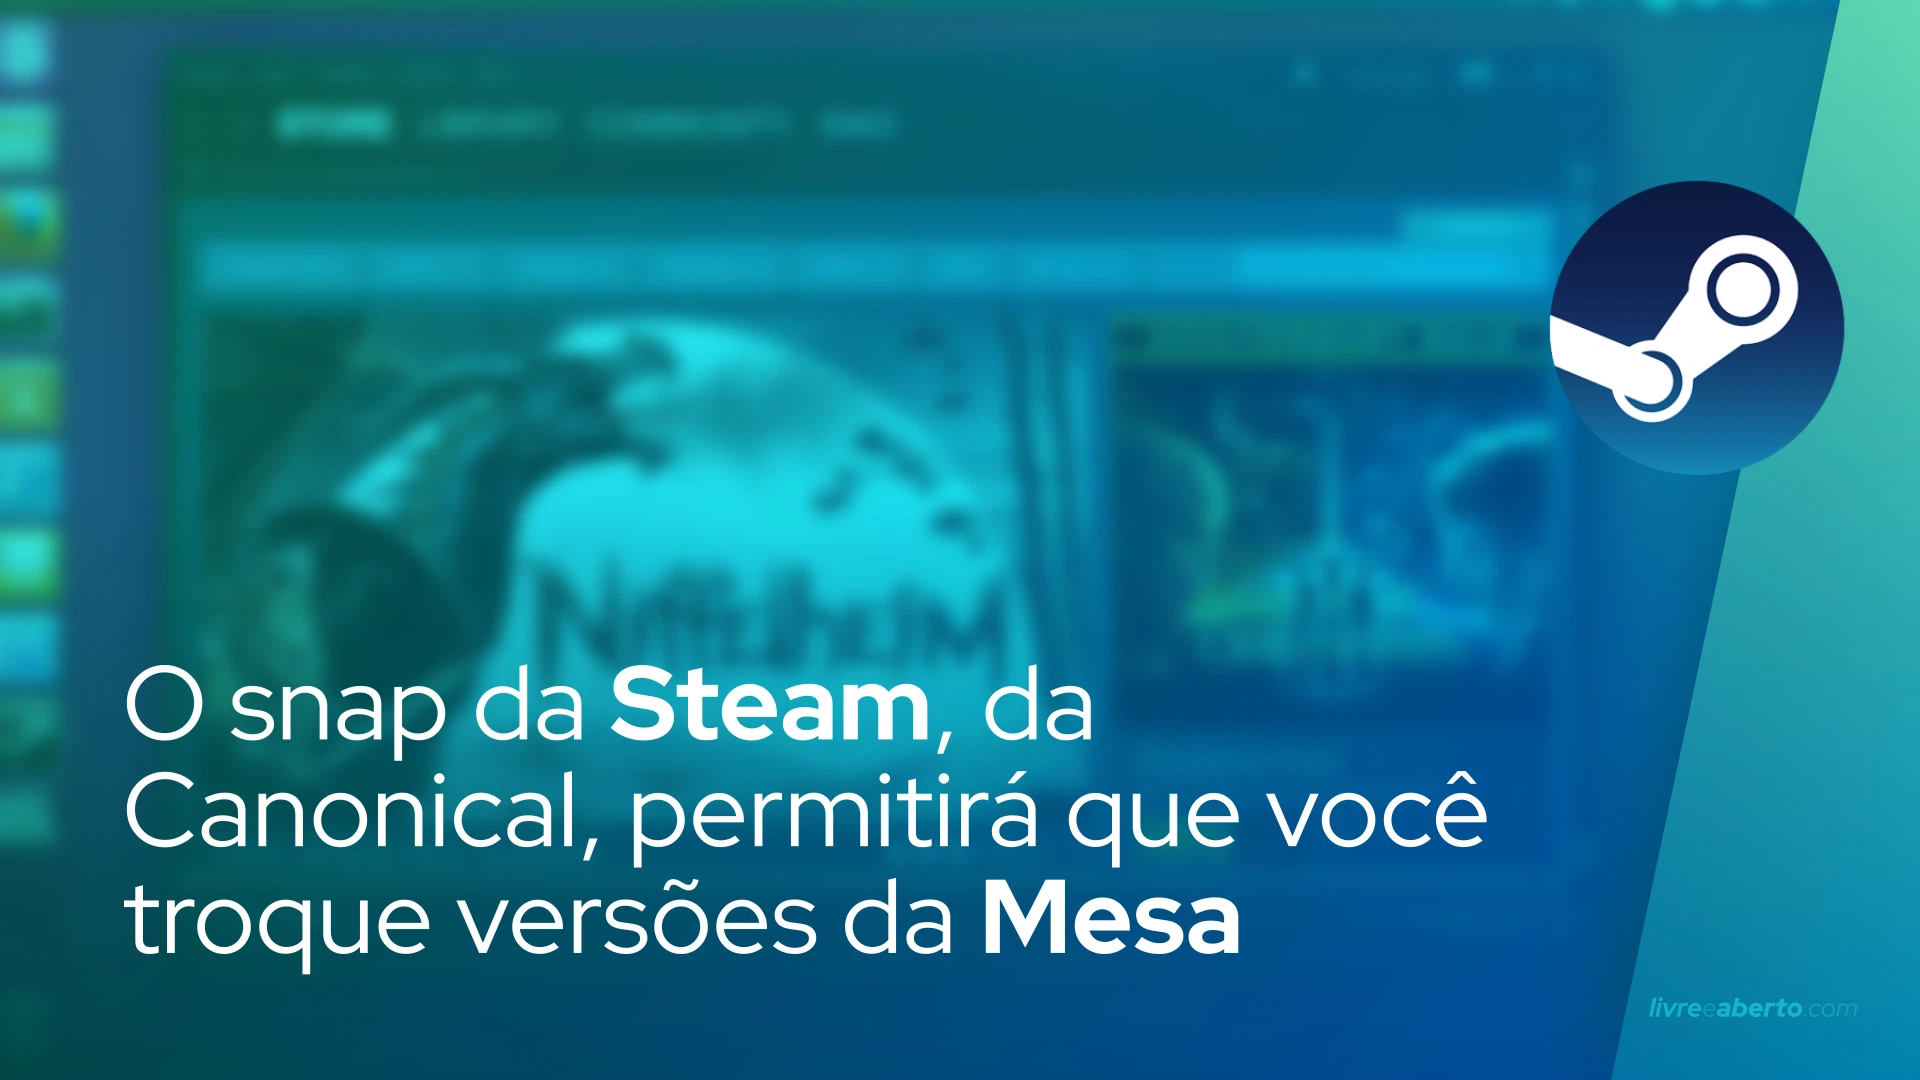 O snap da Steam, da Canonical, permitirá que você troque versões da Mesa